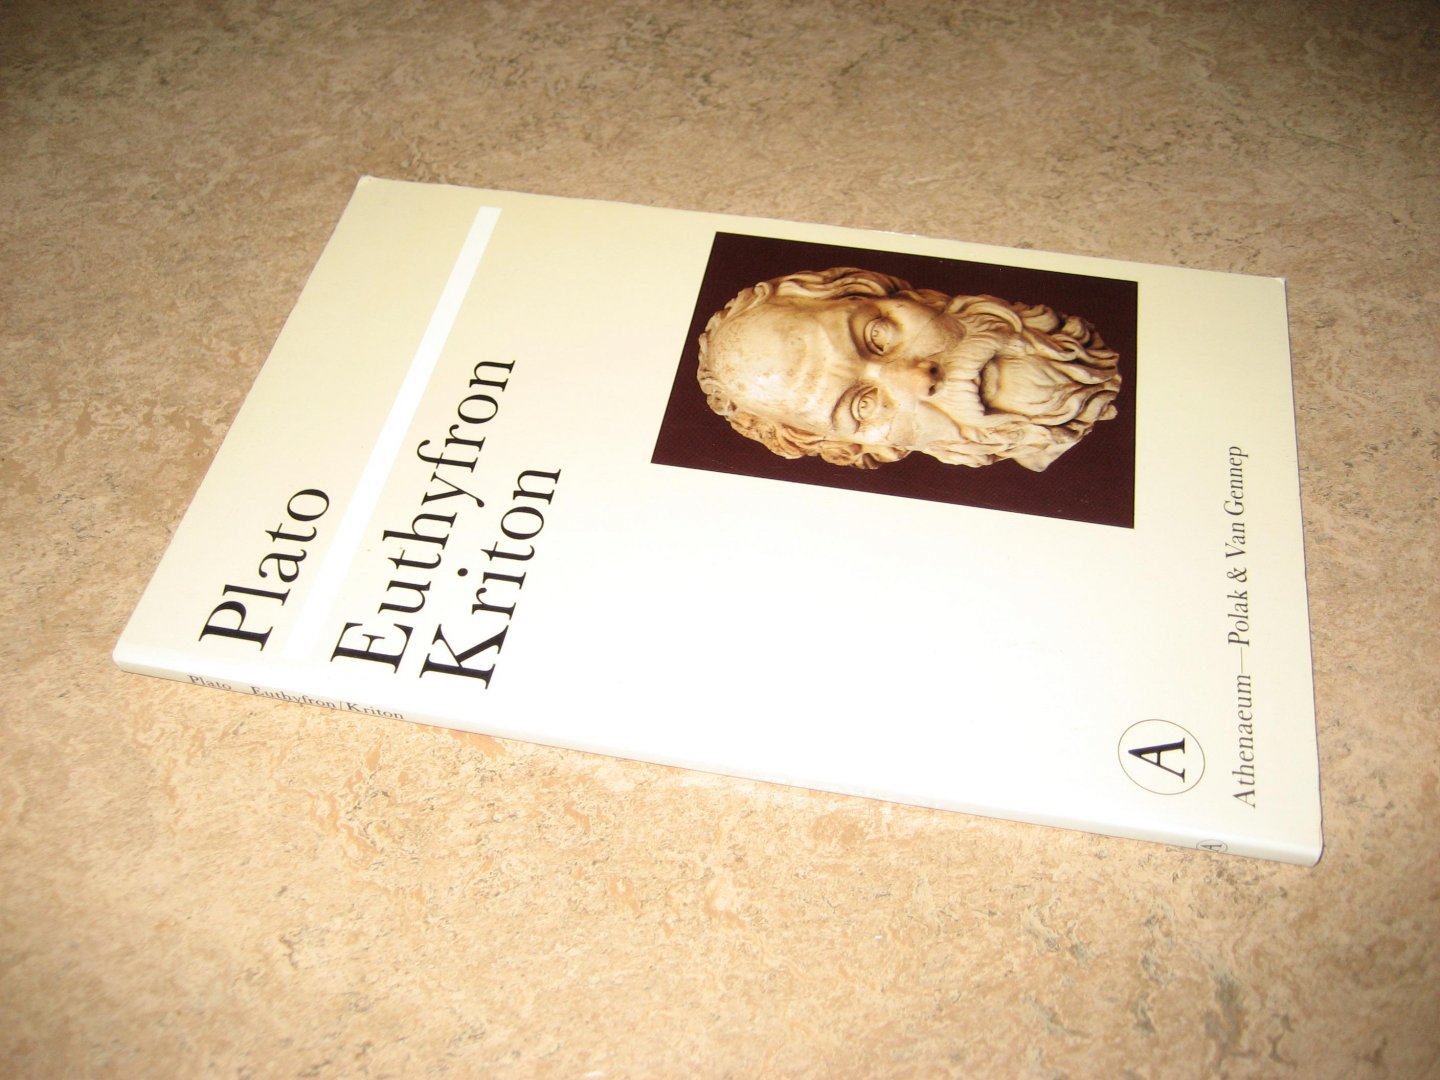 Plato - Euthyfron; Kriton